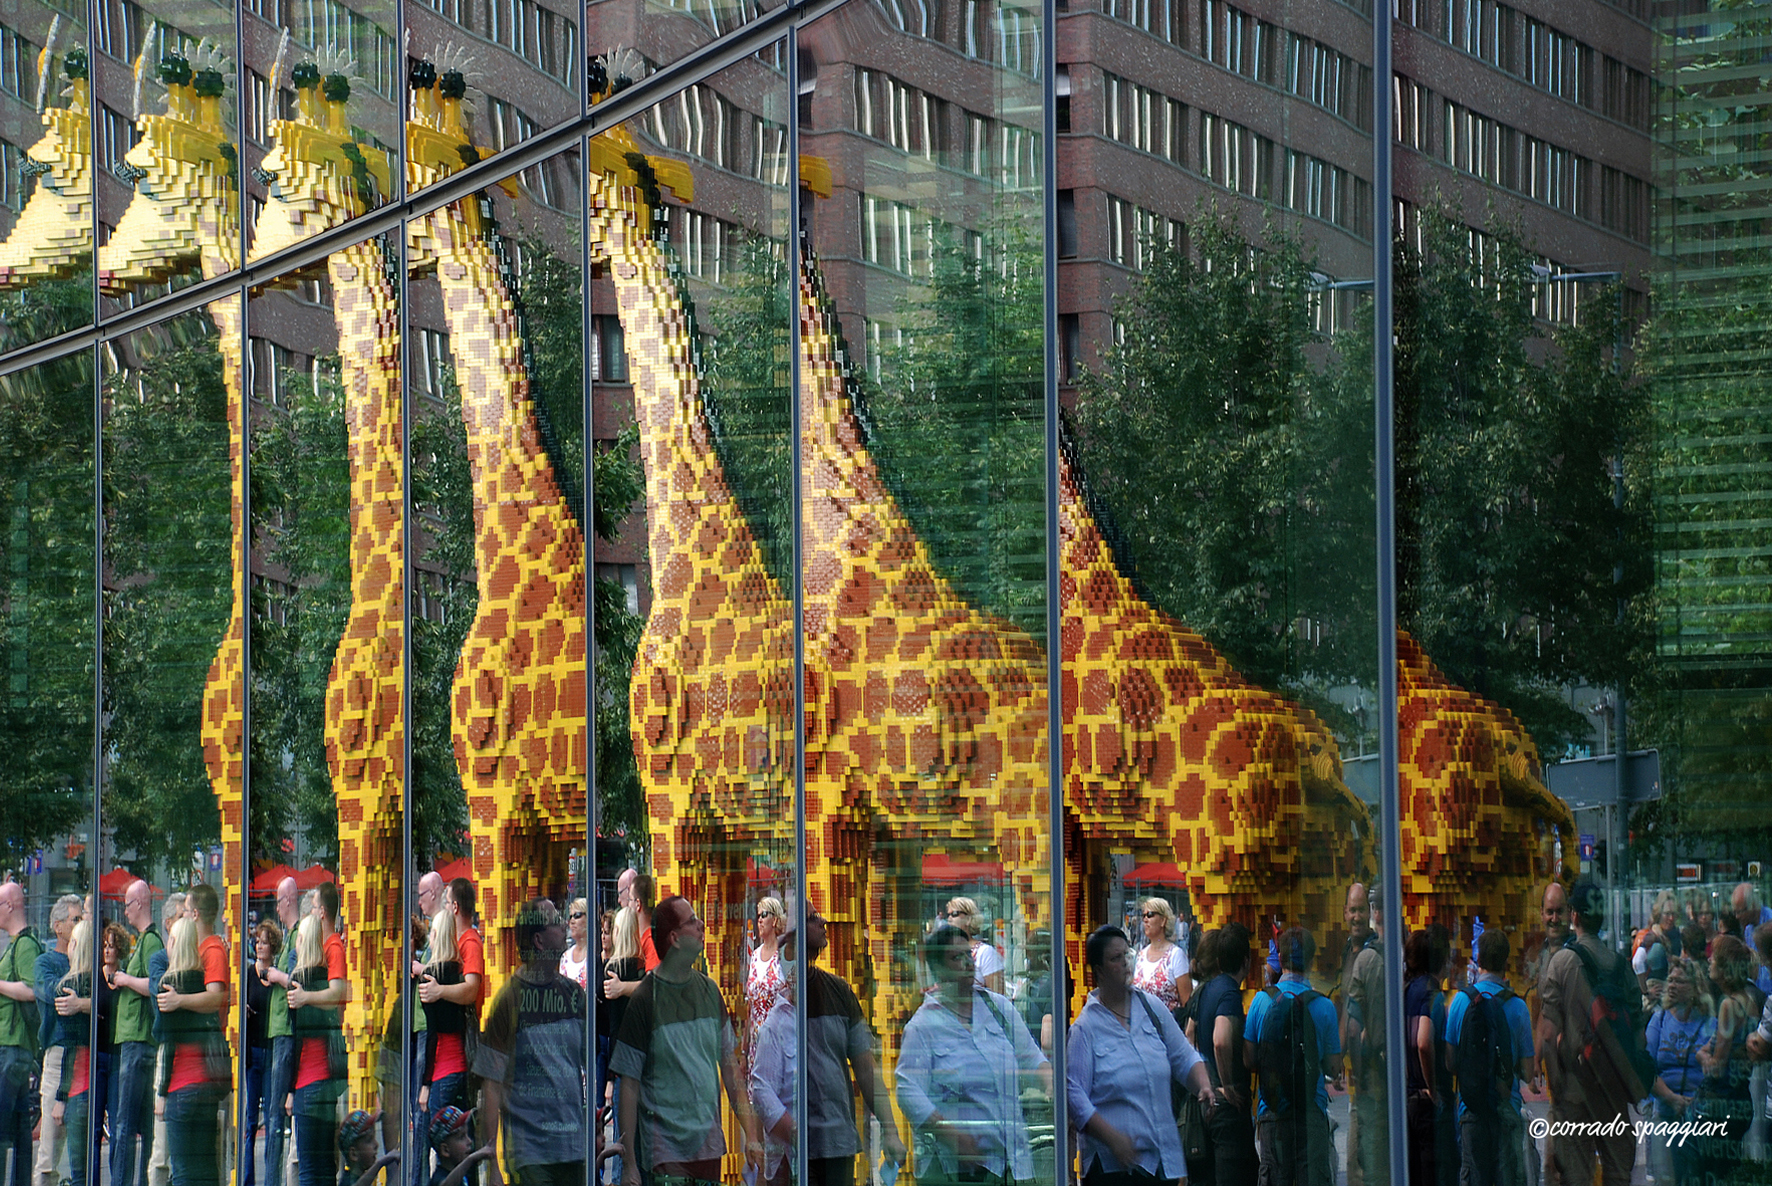 A giraffe, two giraffes, three giraffes ......